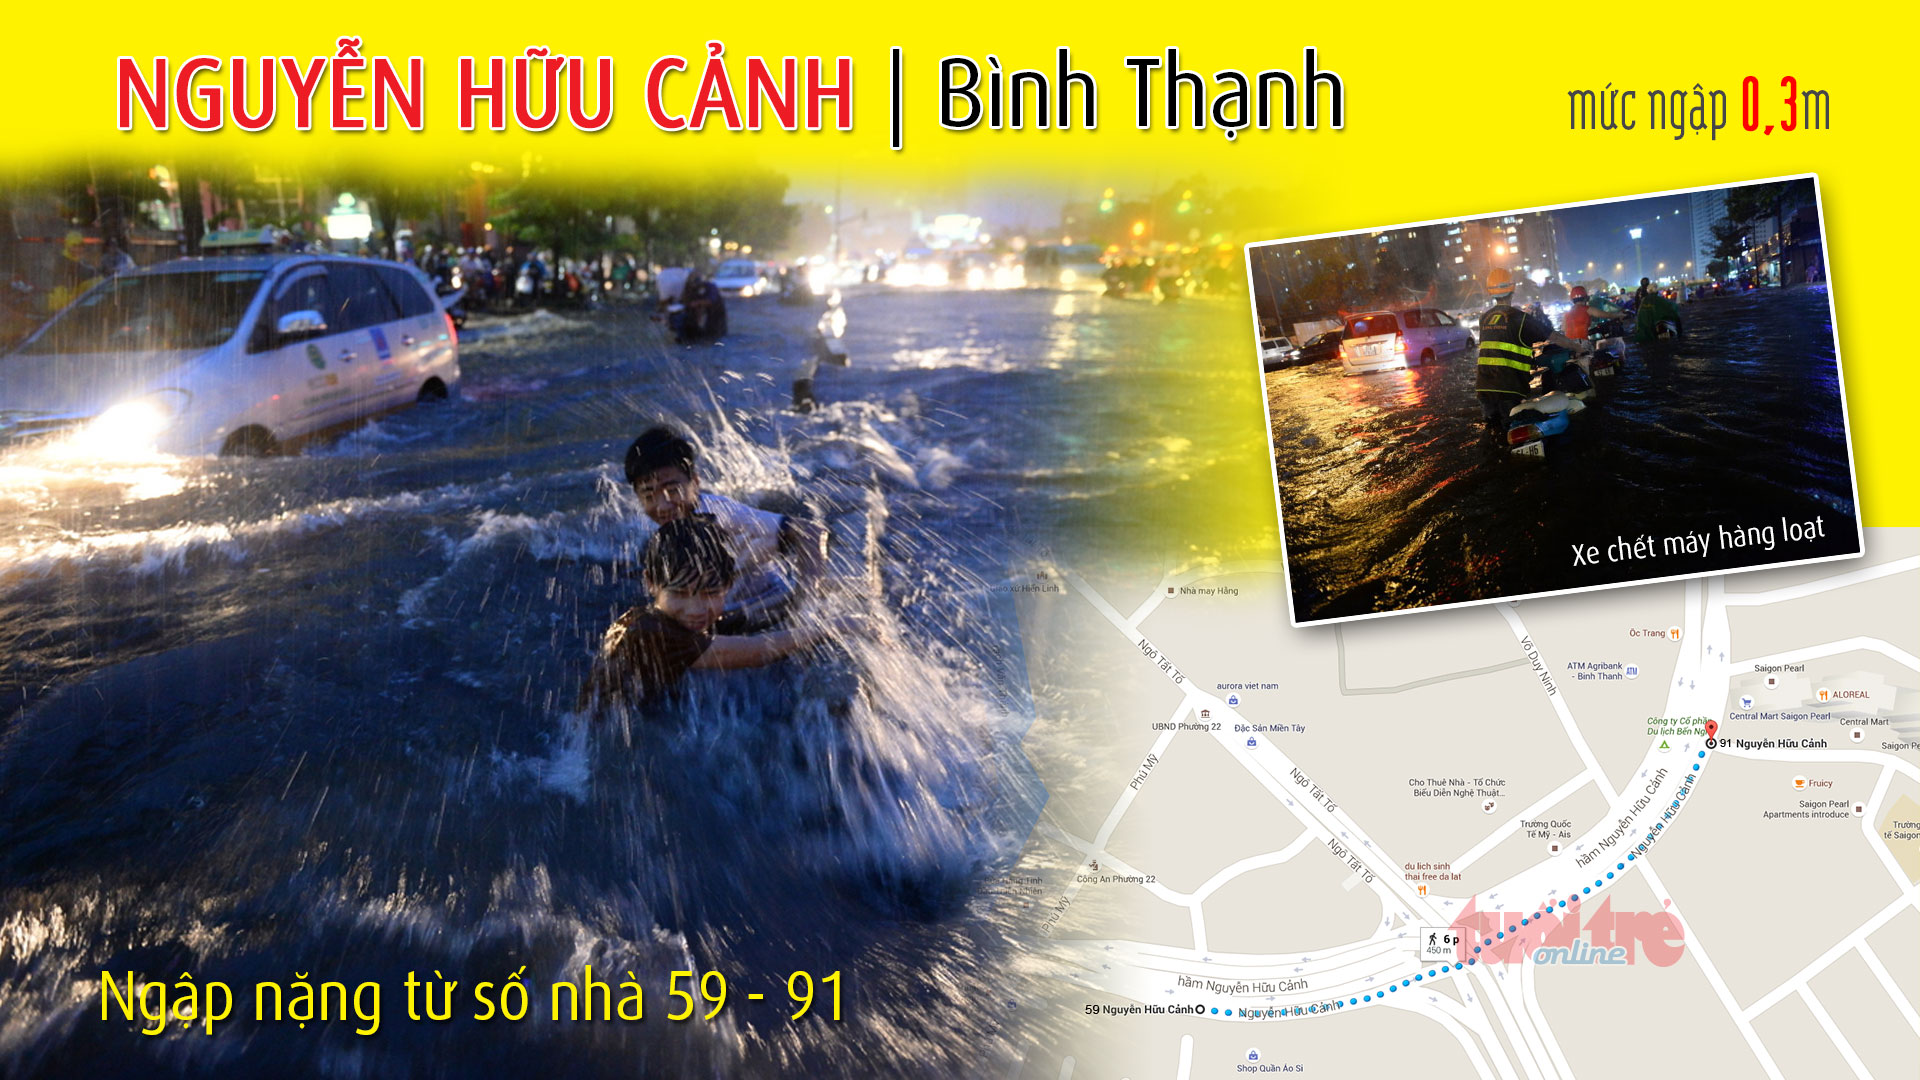 Điểm ngập ở đường Nguyễn Hữu Cảnh (Bình Thạnh), thuộc 1 trong 66 điểm ngập ở TP.HCM trong cơn mưa chiều 15-9-2015 - Đồ họa: Việt Anh - T.Thiên